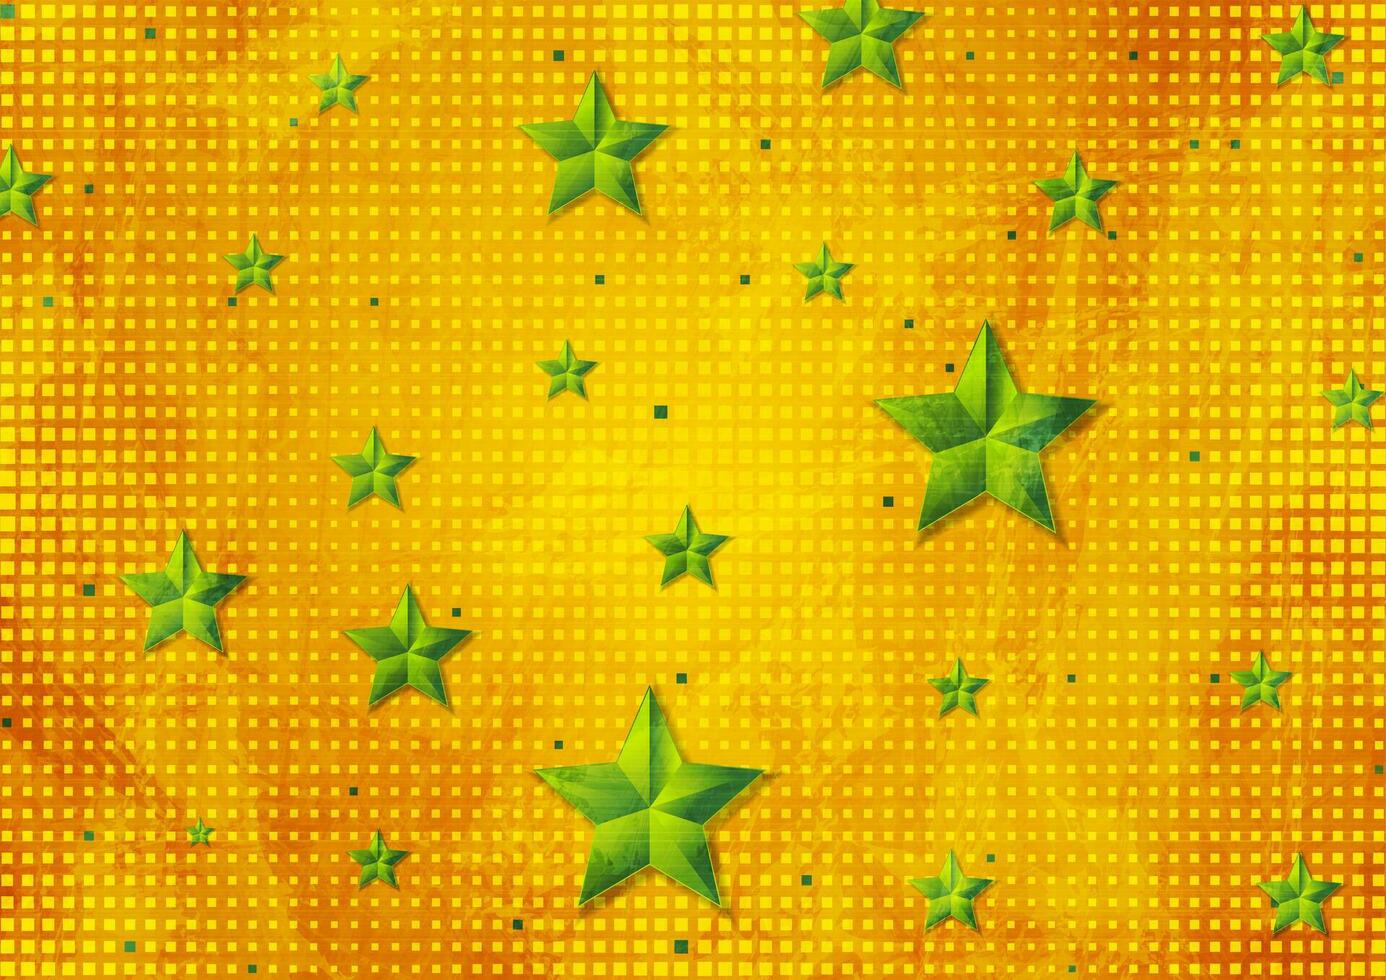 hell Grün Sterne auf Orange gepunktet Hintergrund vektor